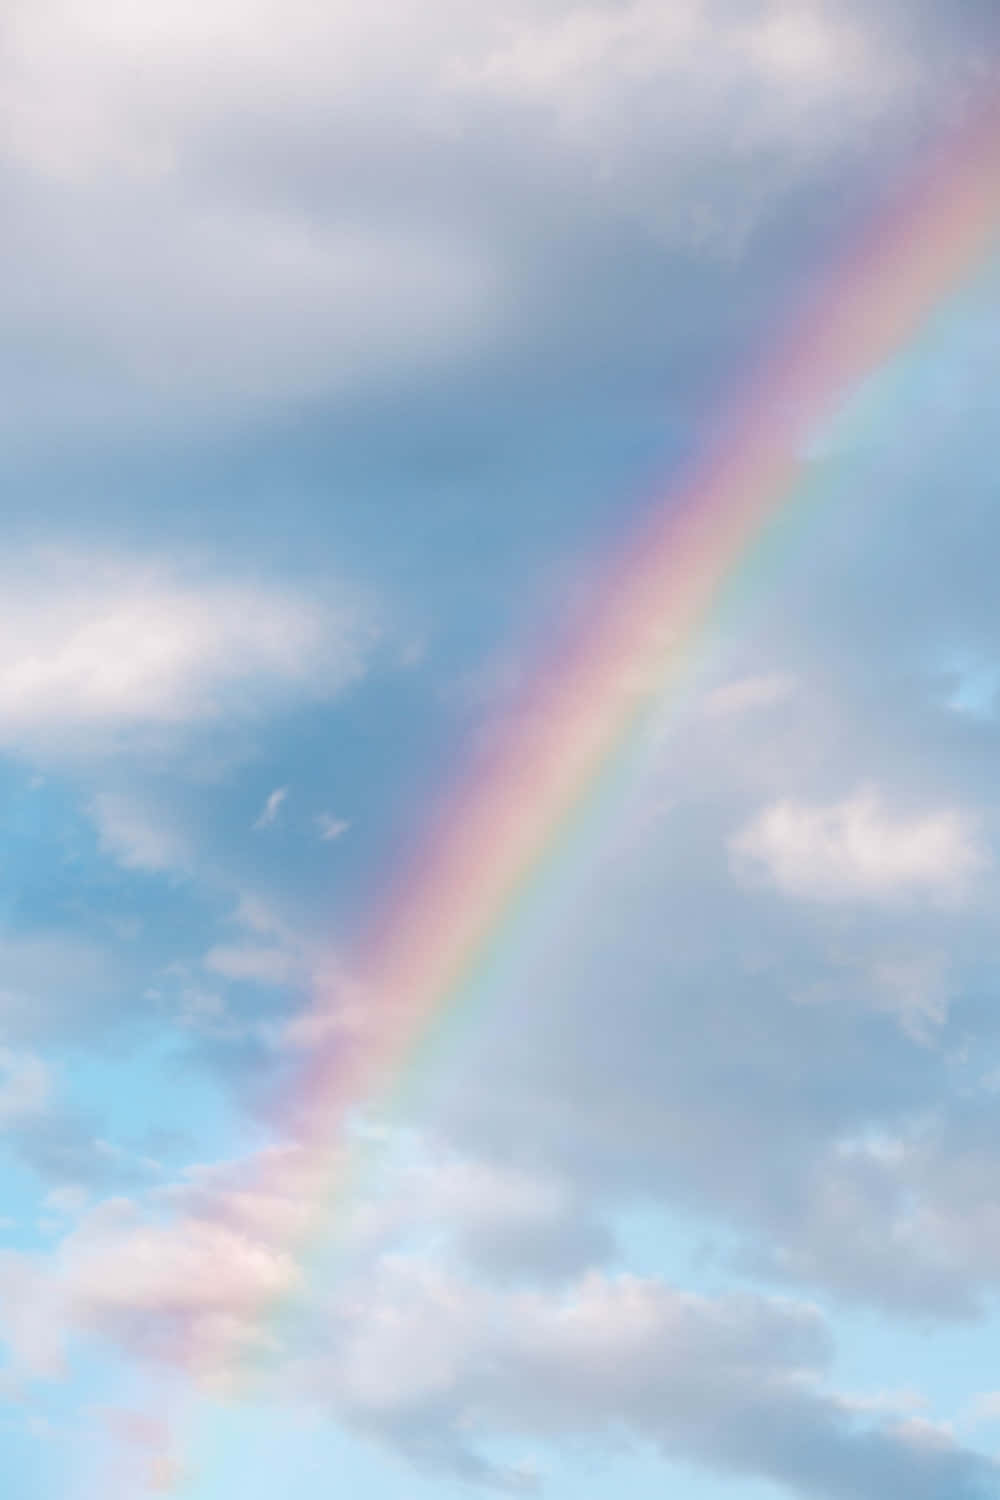 Hiersind Regenbogen, Die Helligkeit Und Freude In Graue Tage Bringen.